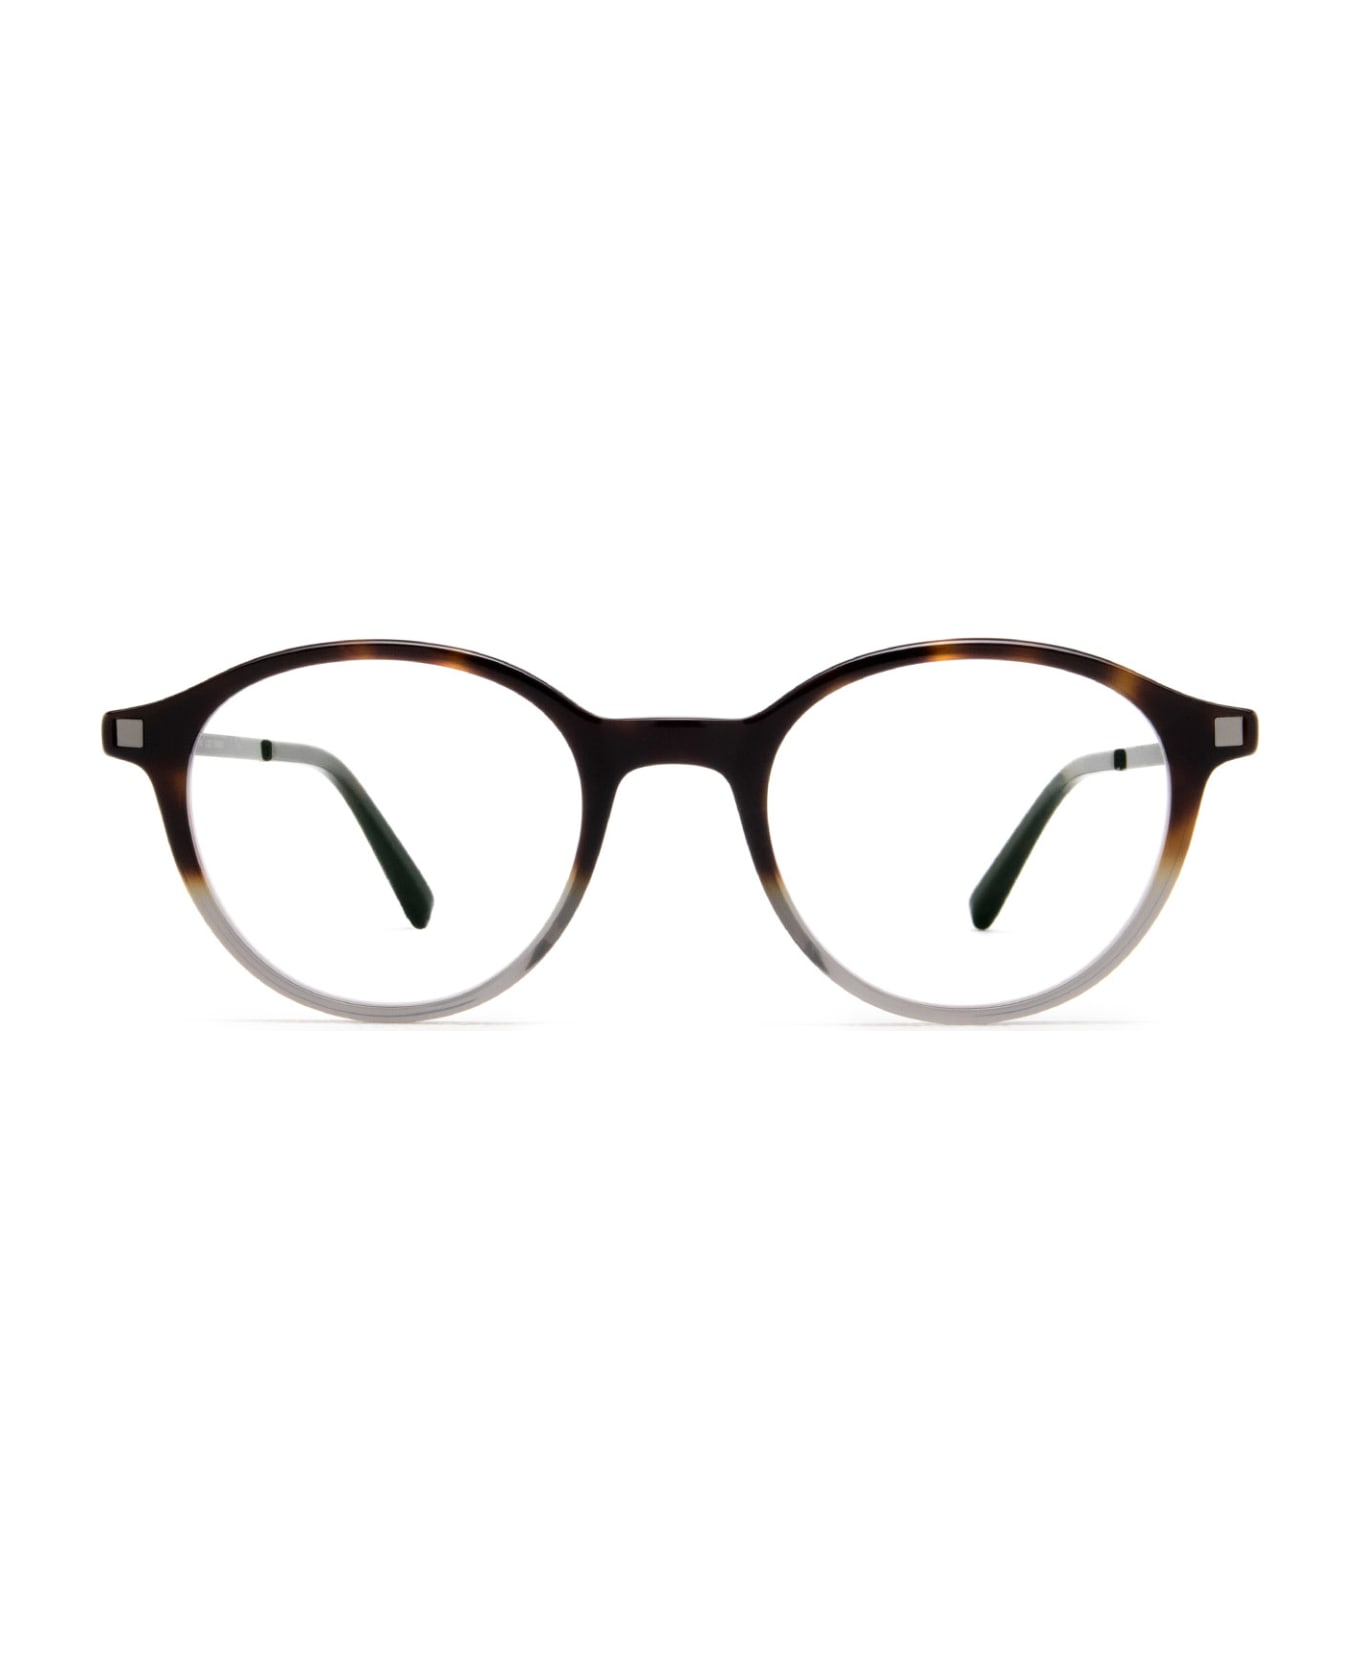 Mykita Kolmar C9 Santiago Gradient/shiny Gra Glasses - C9 Santiago Gradient/Shiny Gra アイウェア